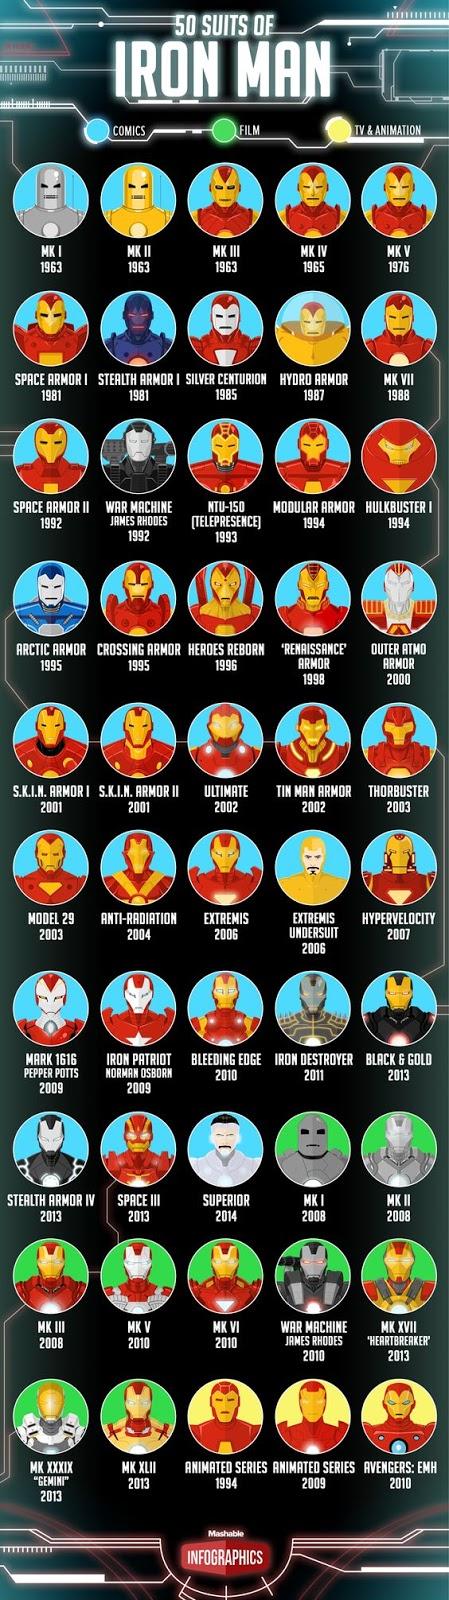 Los modelos de las armaduras de Iron Man